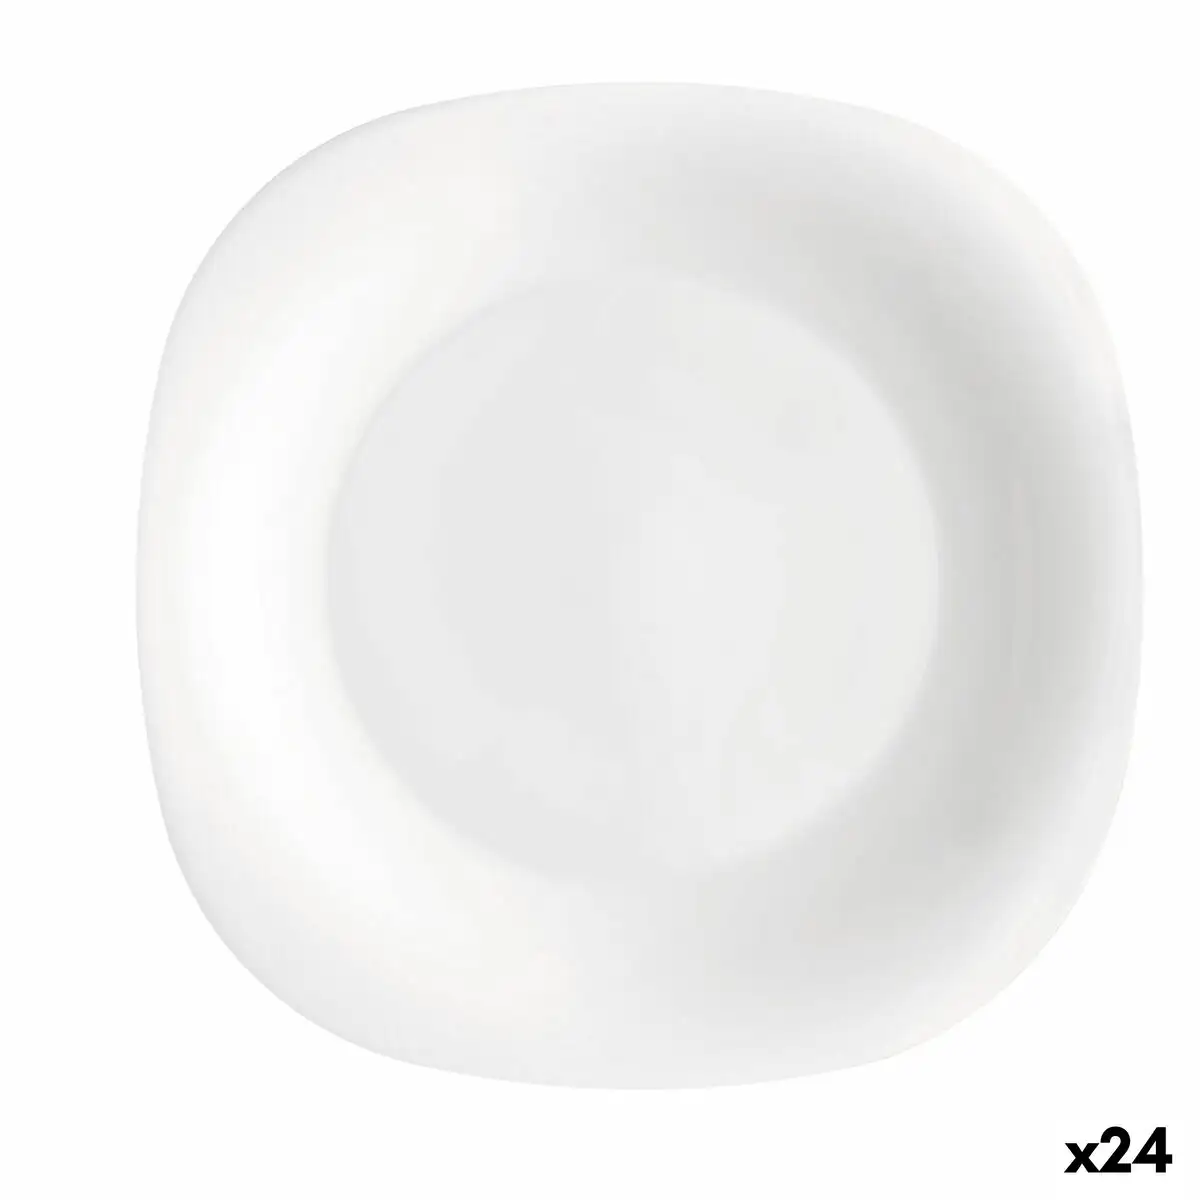 Assiette a dessert bormioli rocco parma blanc verre 24 unites _3391. DIAYTAR SENEGAL - Votre Portail Vers l'Exclusivité. Explorez notre boutique en ligne pour trouver des produits uniques et exclusifs, conçus pour les amateurs de qualité.